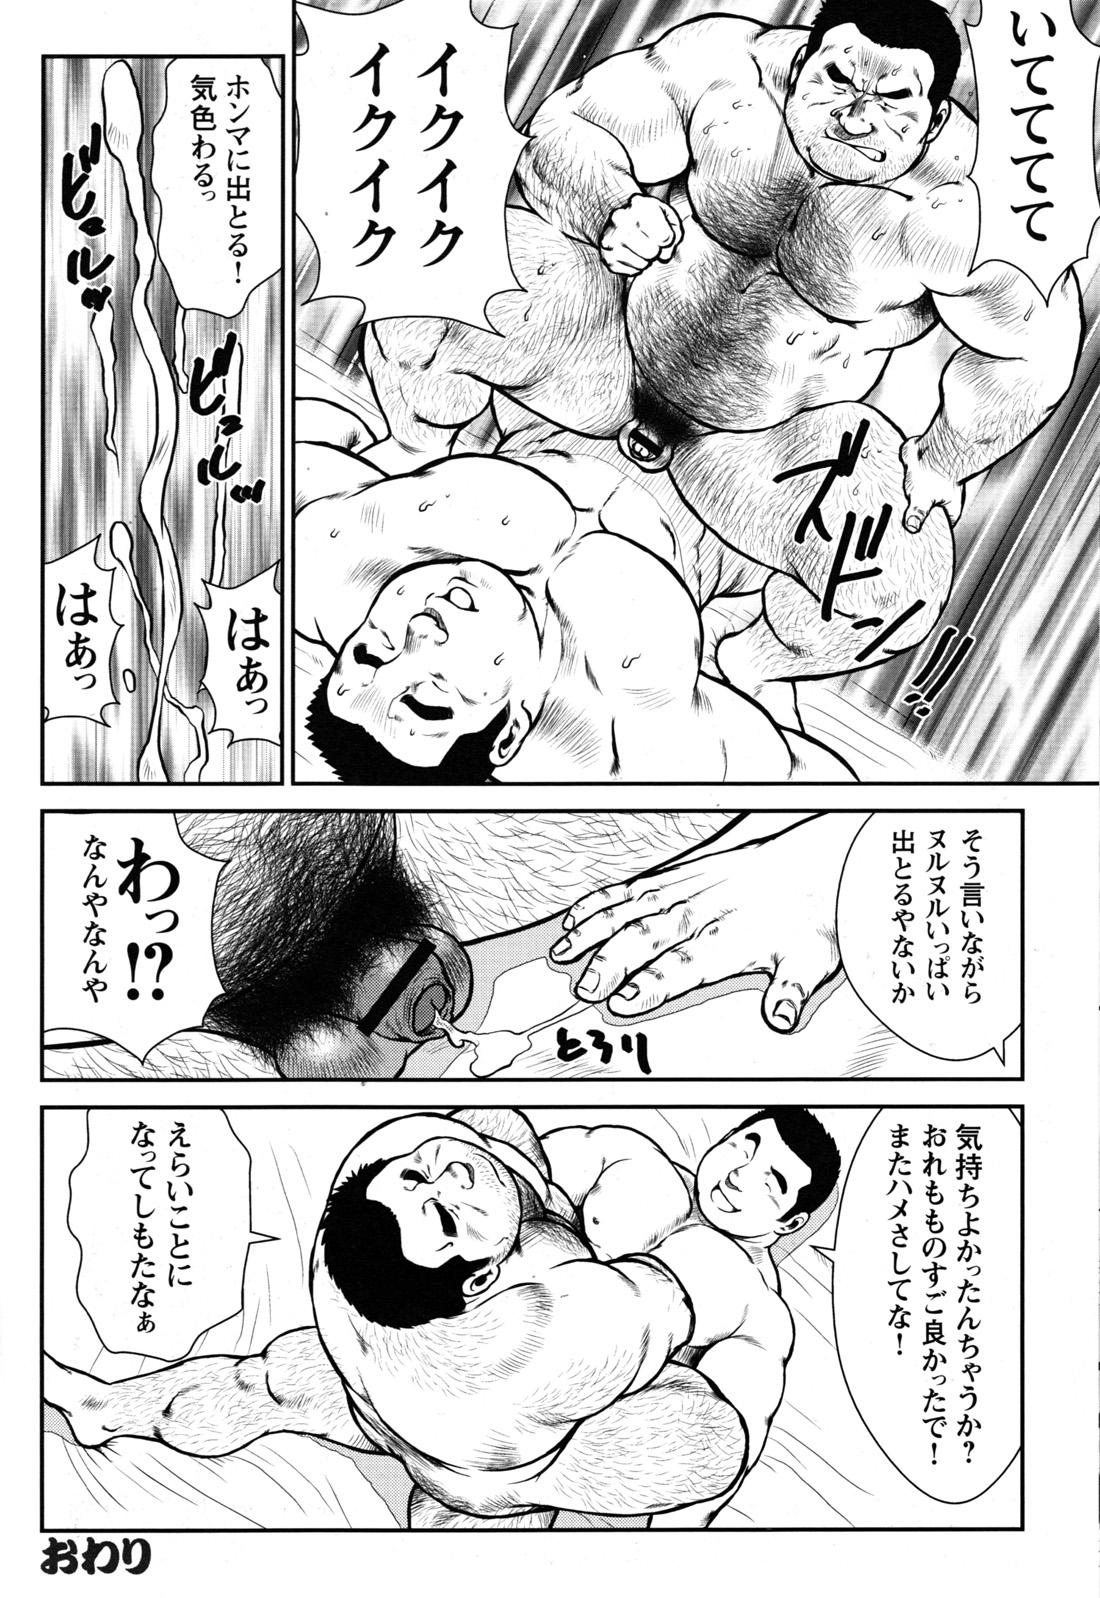 Comic G-men Gaho No.09 Gacchibi Zeme 112